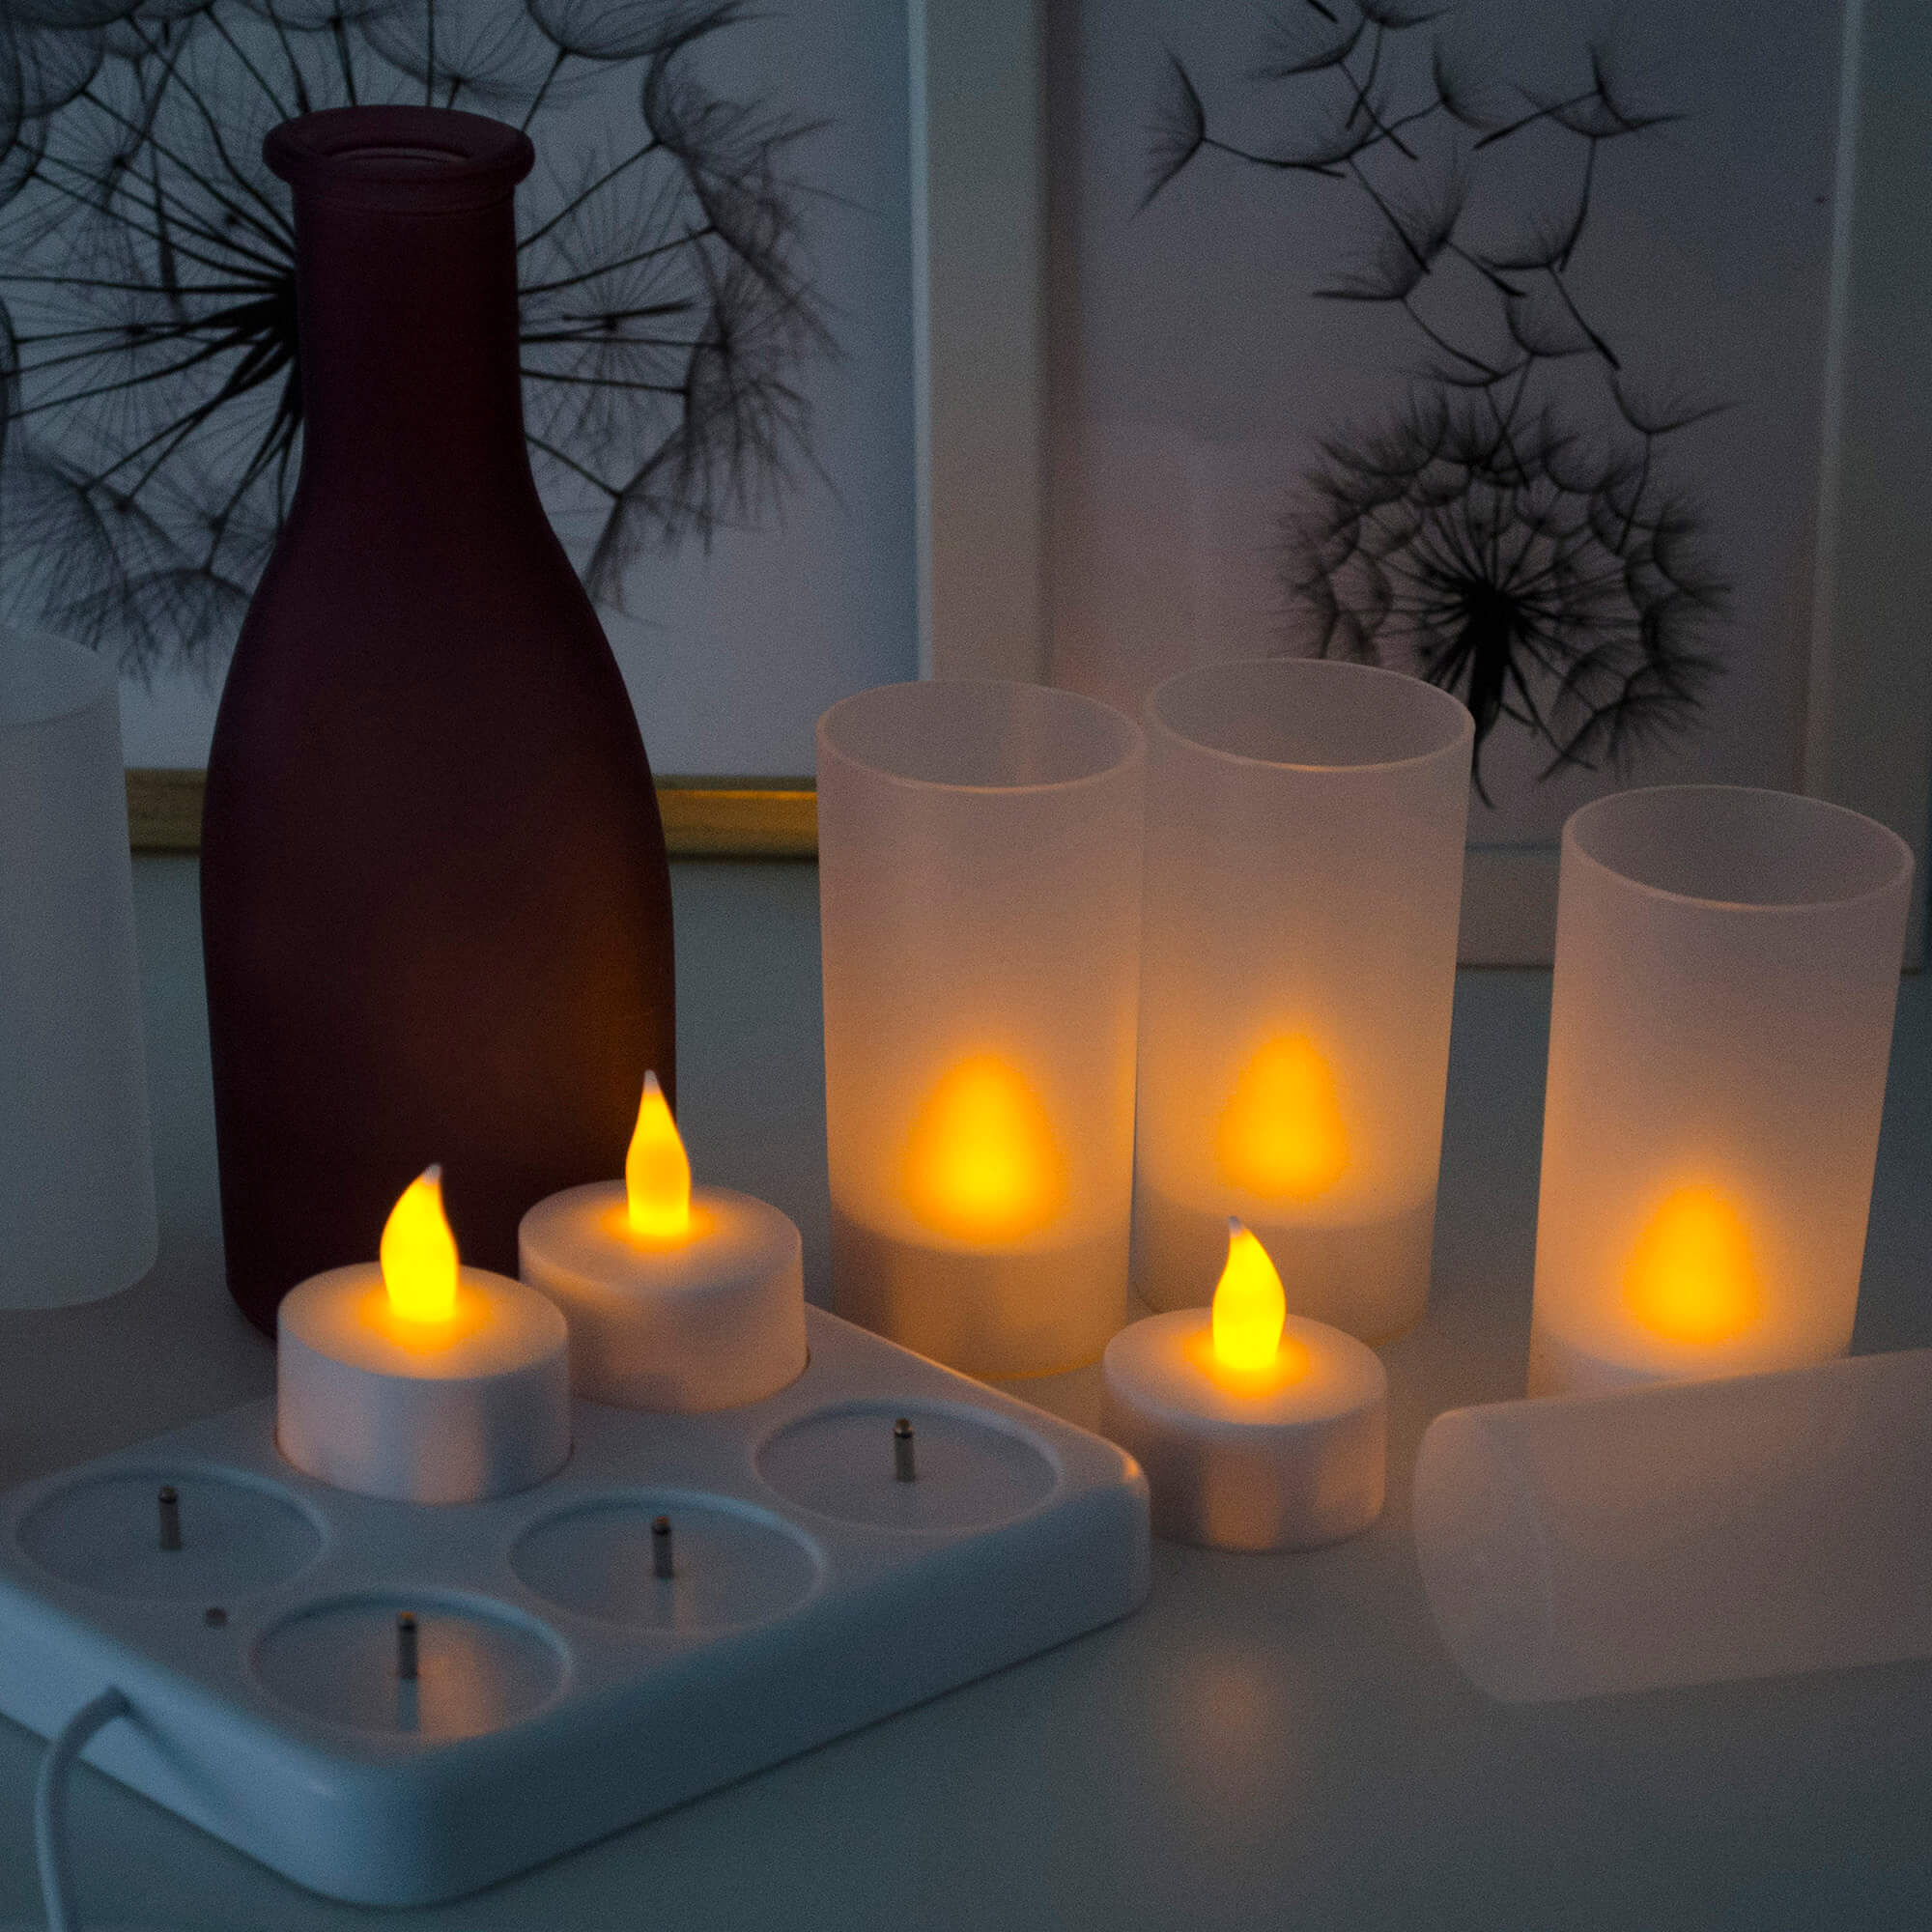 6 LED-Teelichter und Acrylgläser, realistisch flackernde Flamme, wiederaufladbare Teelichter, Akku-Ladestation, USB-Kabel, Deko-Beleuchtung